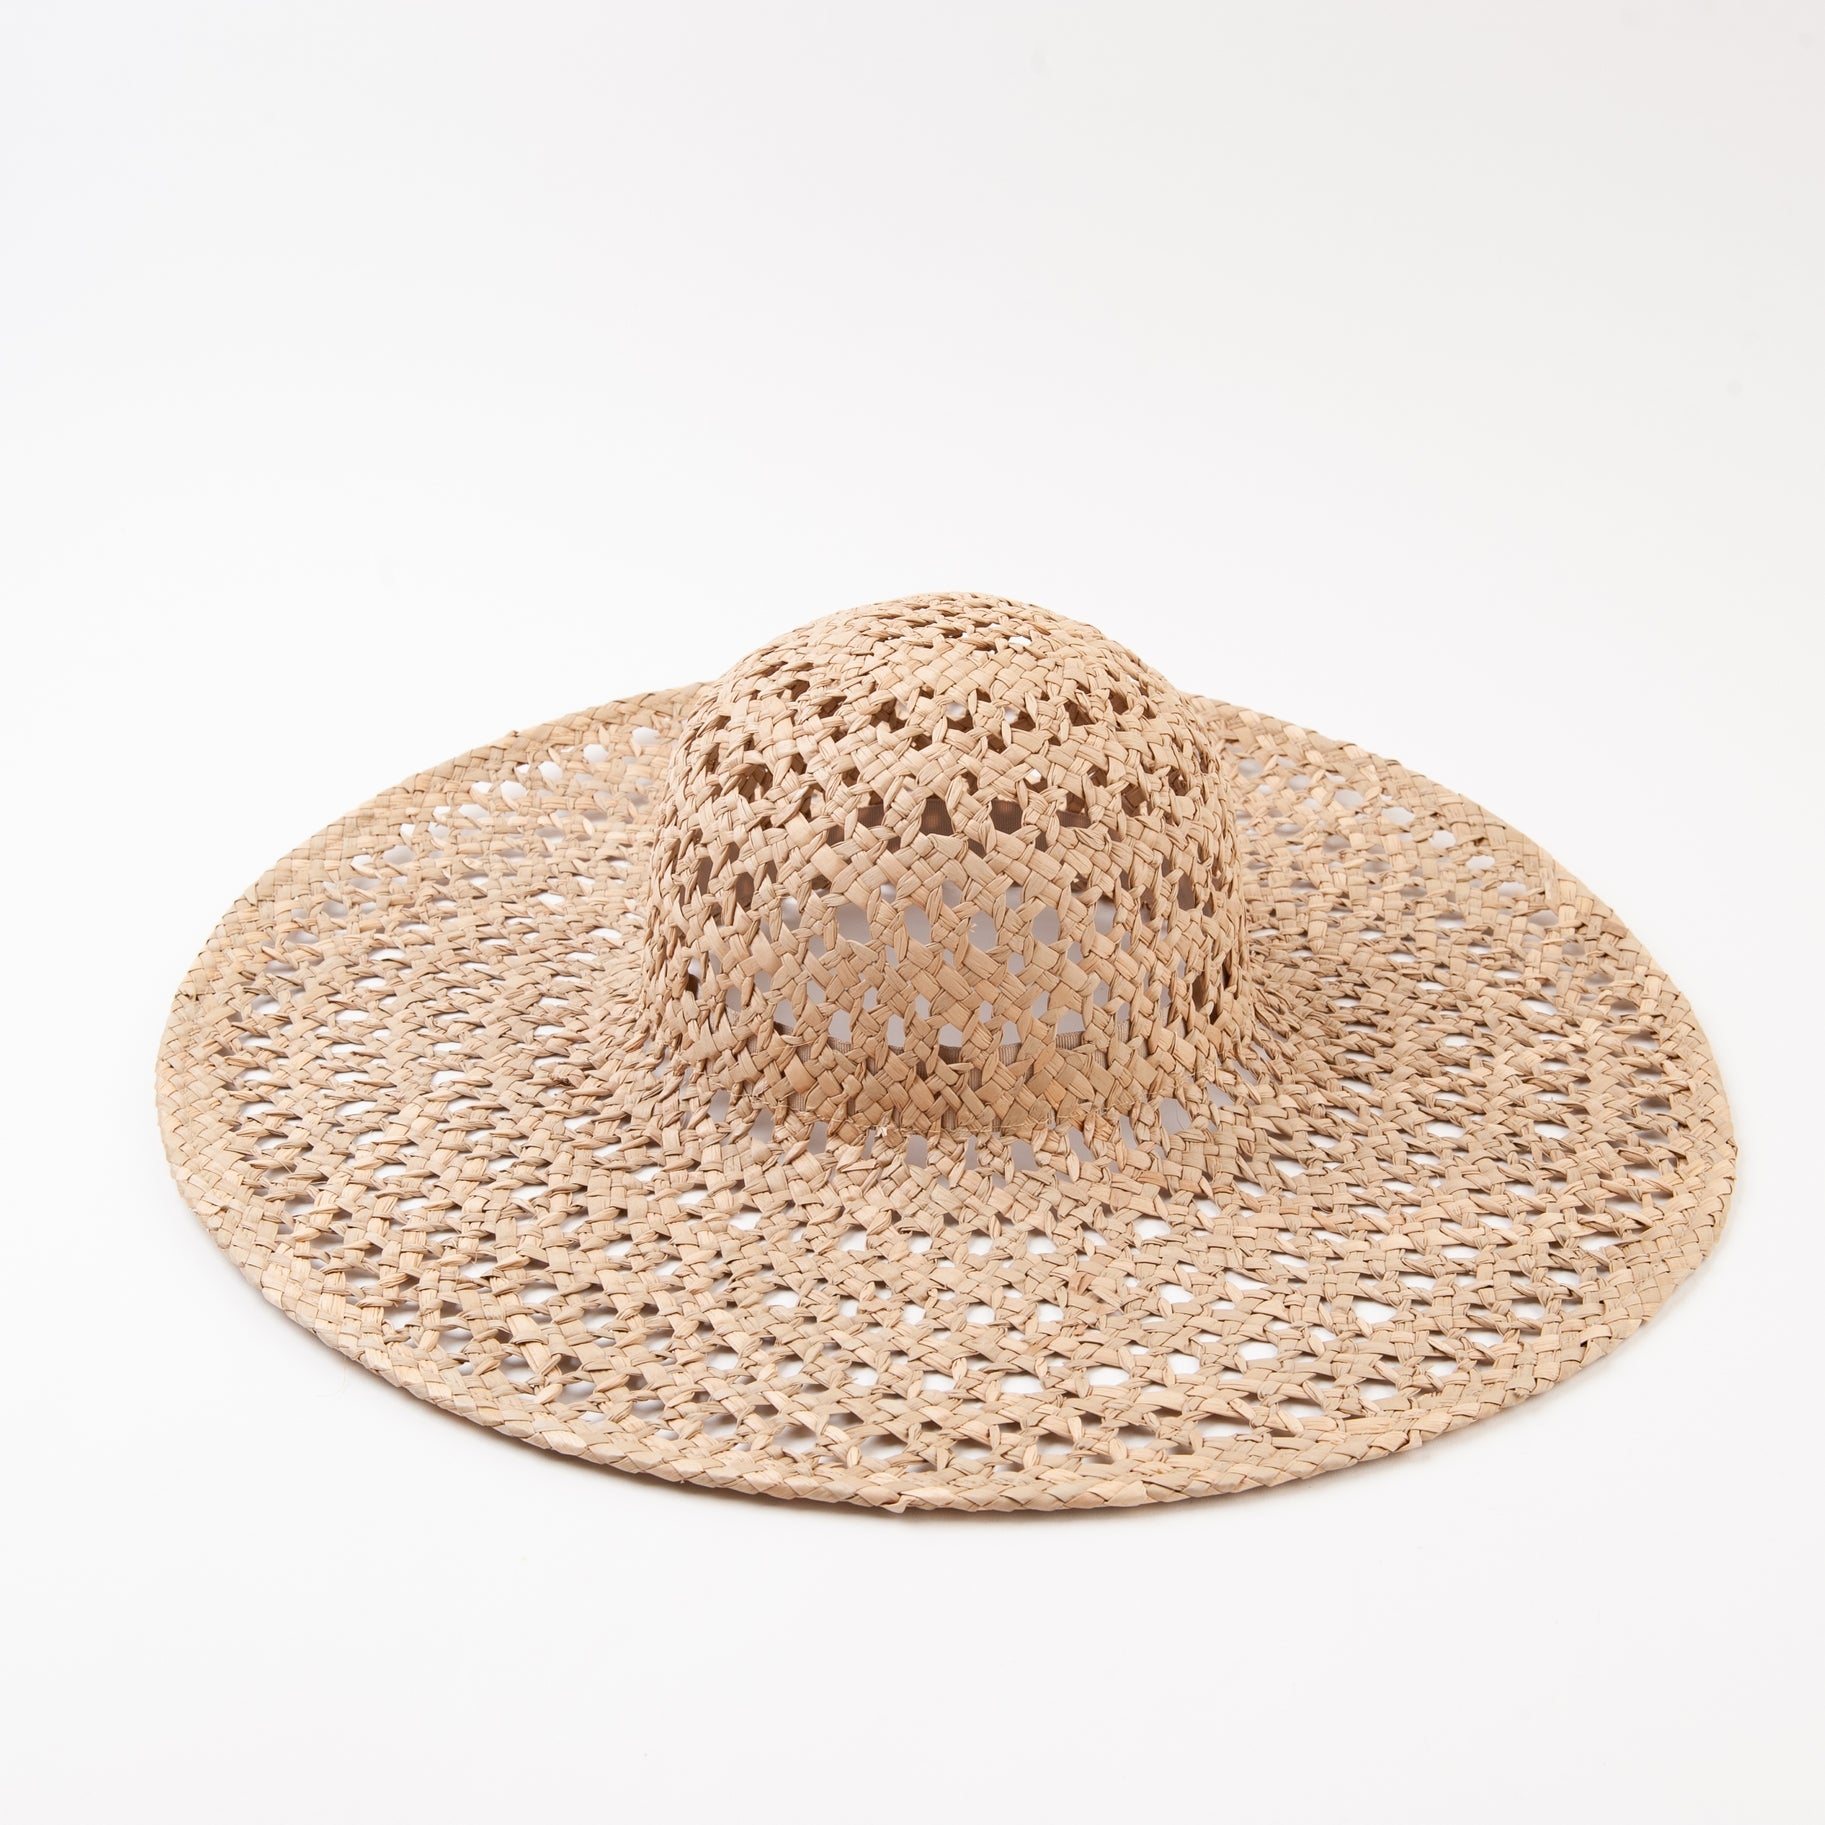 The Montenegra Woven Sea Grass Sun Hat